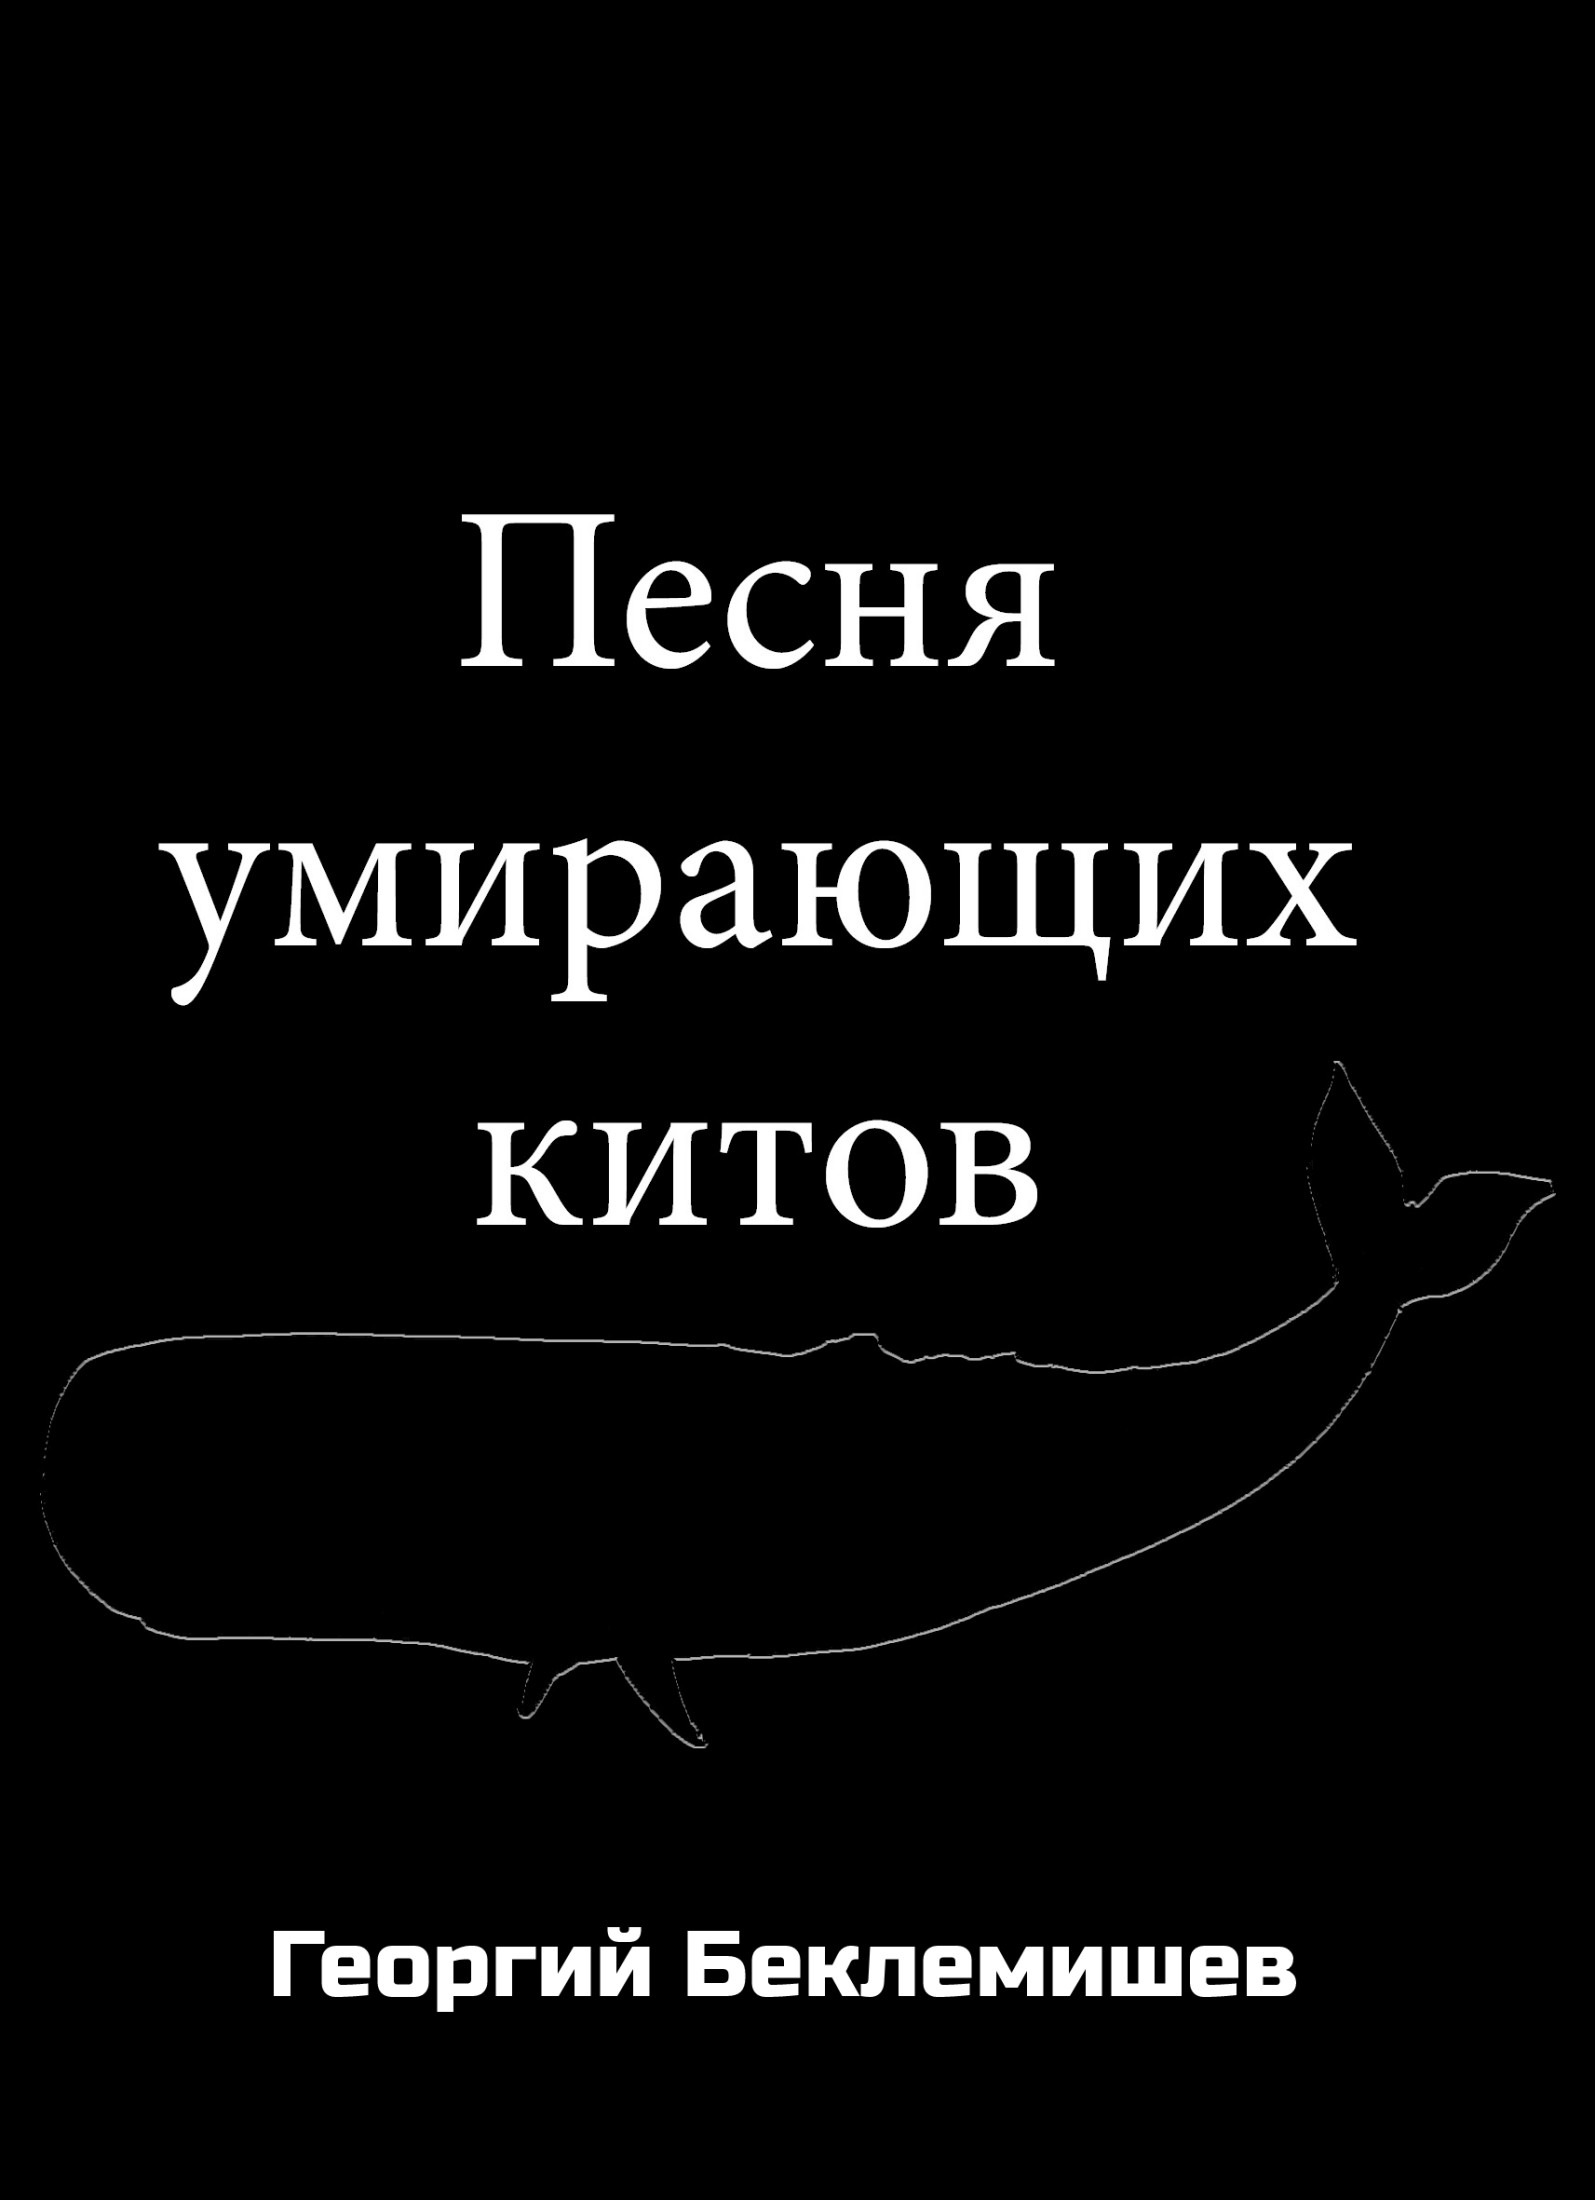 Беклемишев Георгий - Песня умирающих китов скачать бесплатно